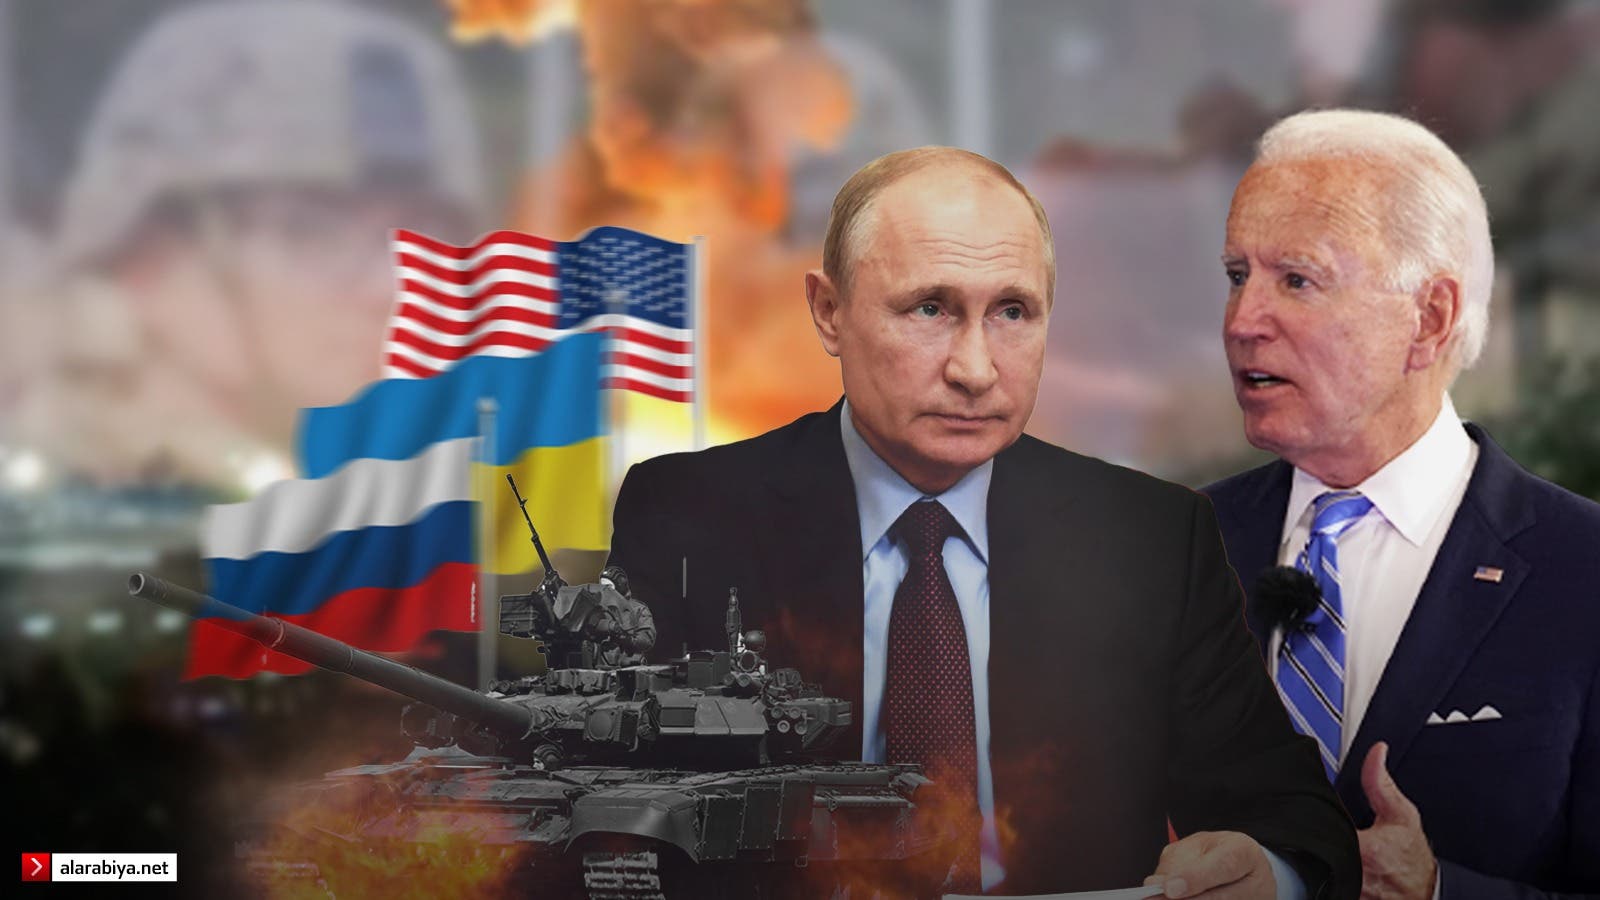 الرئيسان الأميركي جو بايدن والروسي فلاديمير بوتين "تعبيرية"